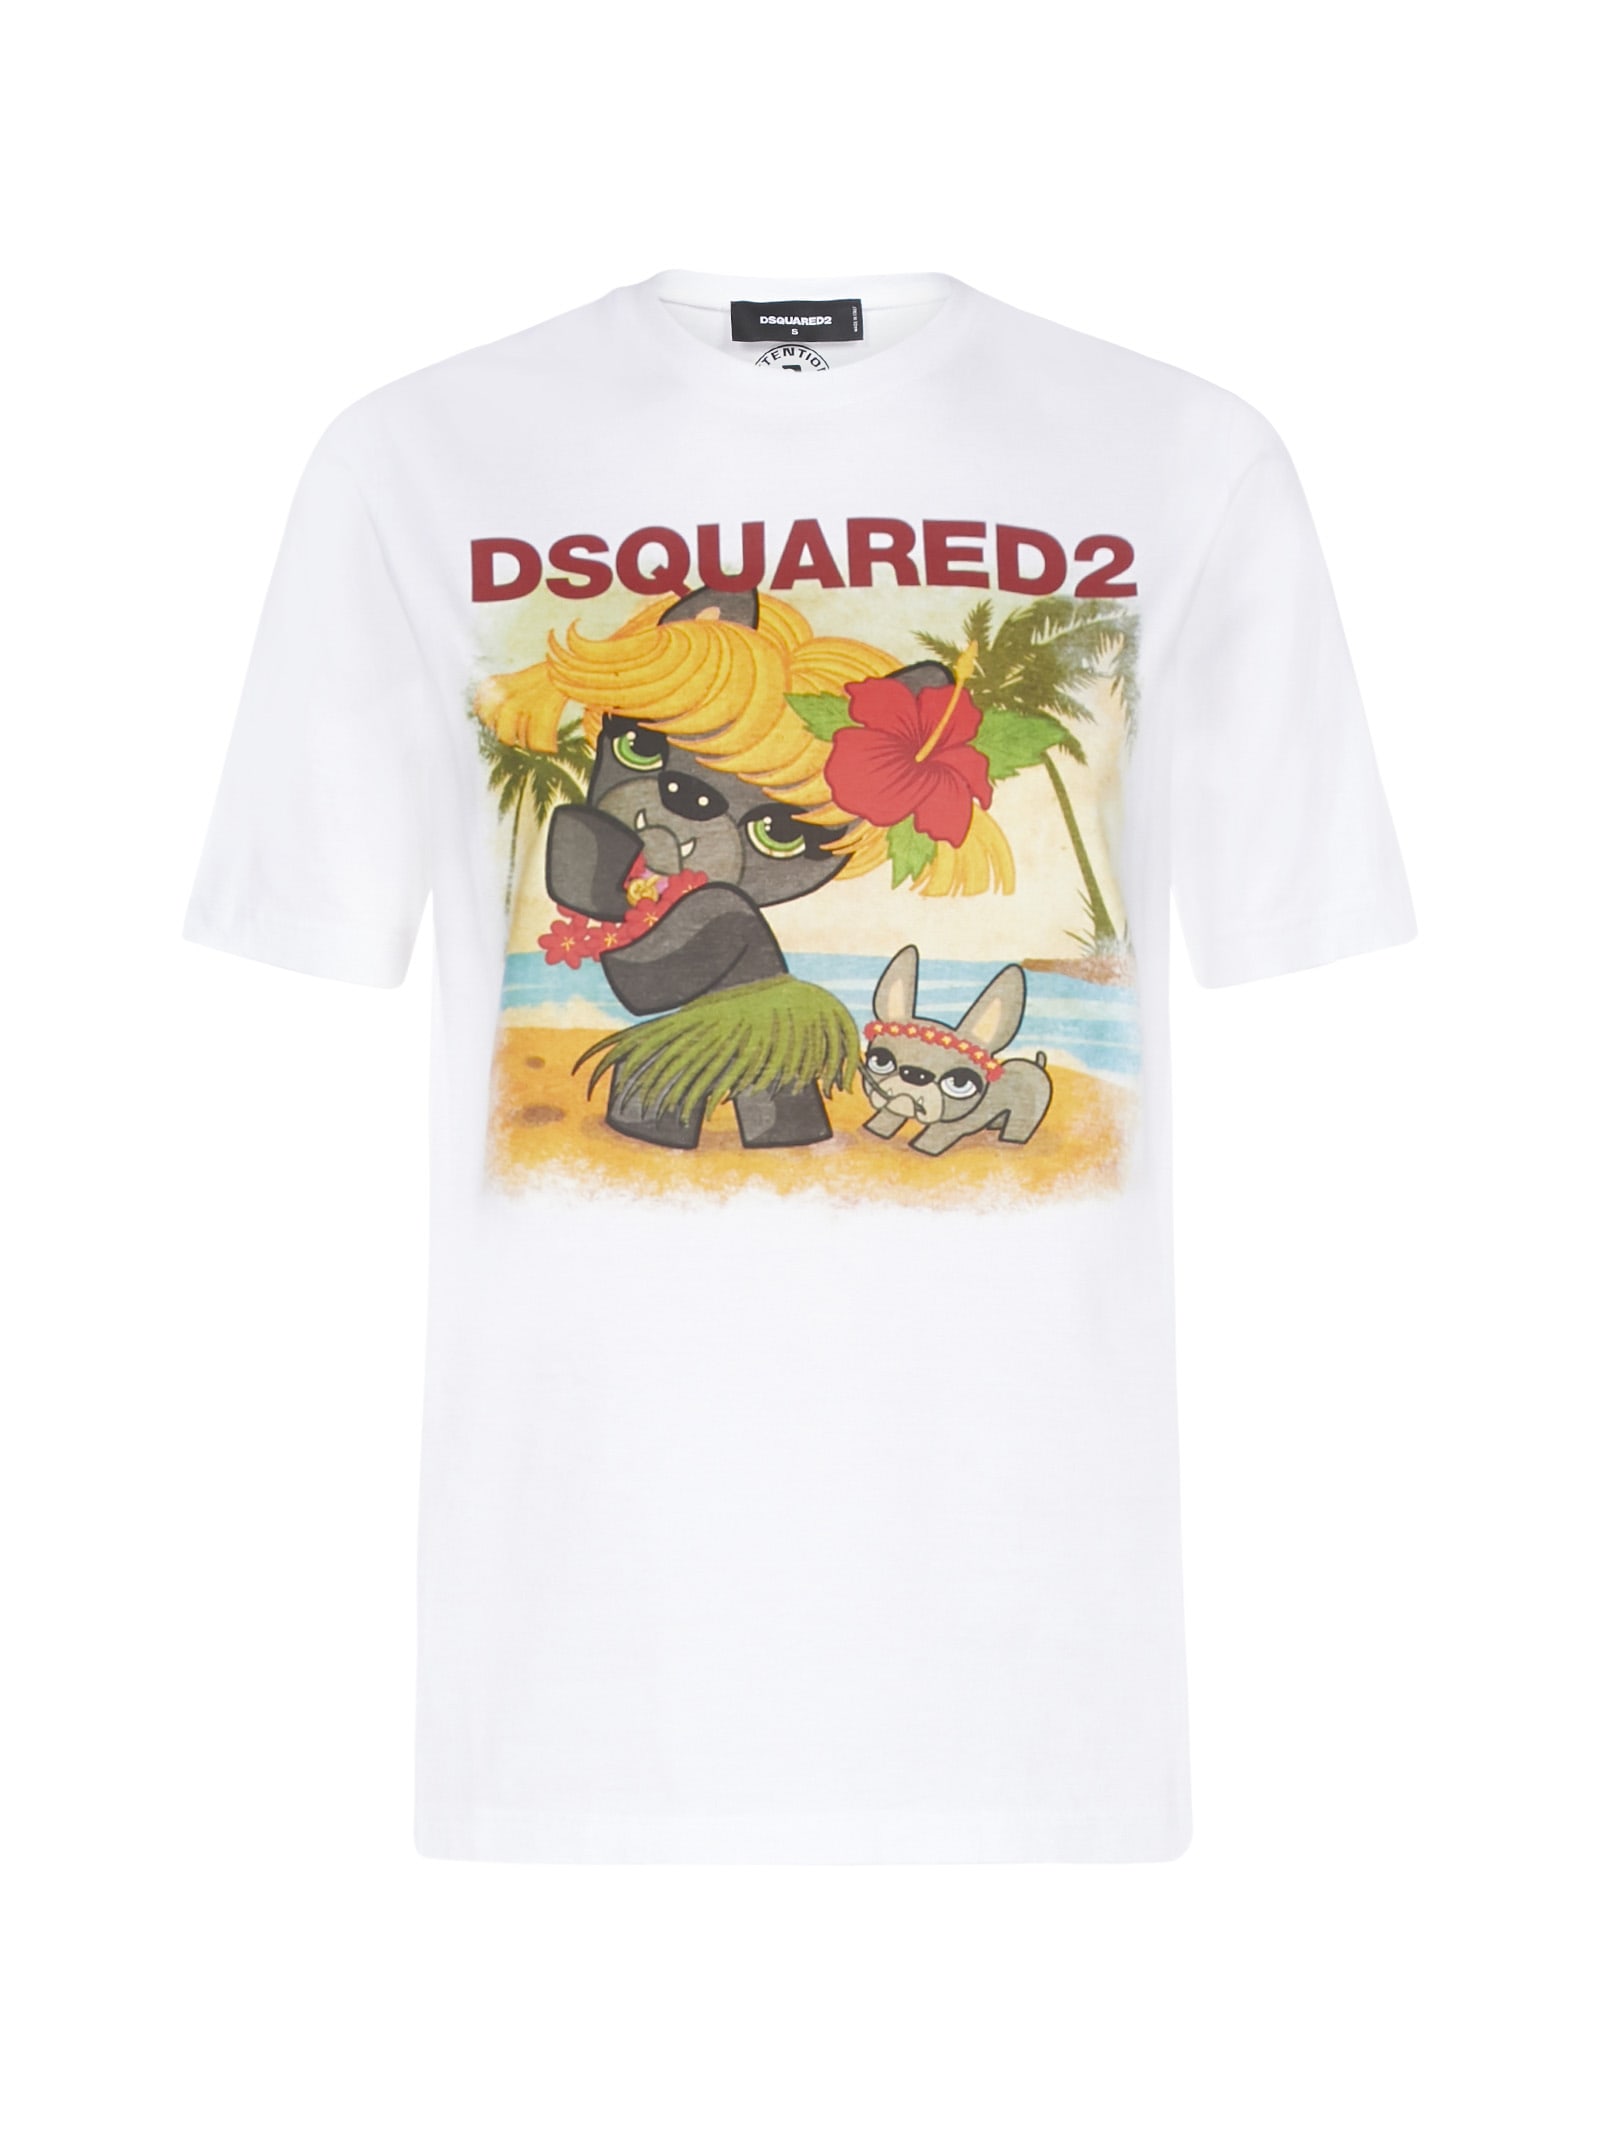 dsquared2 dog t shirt